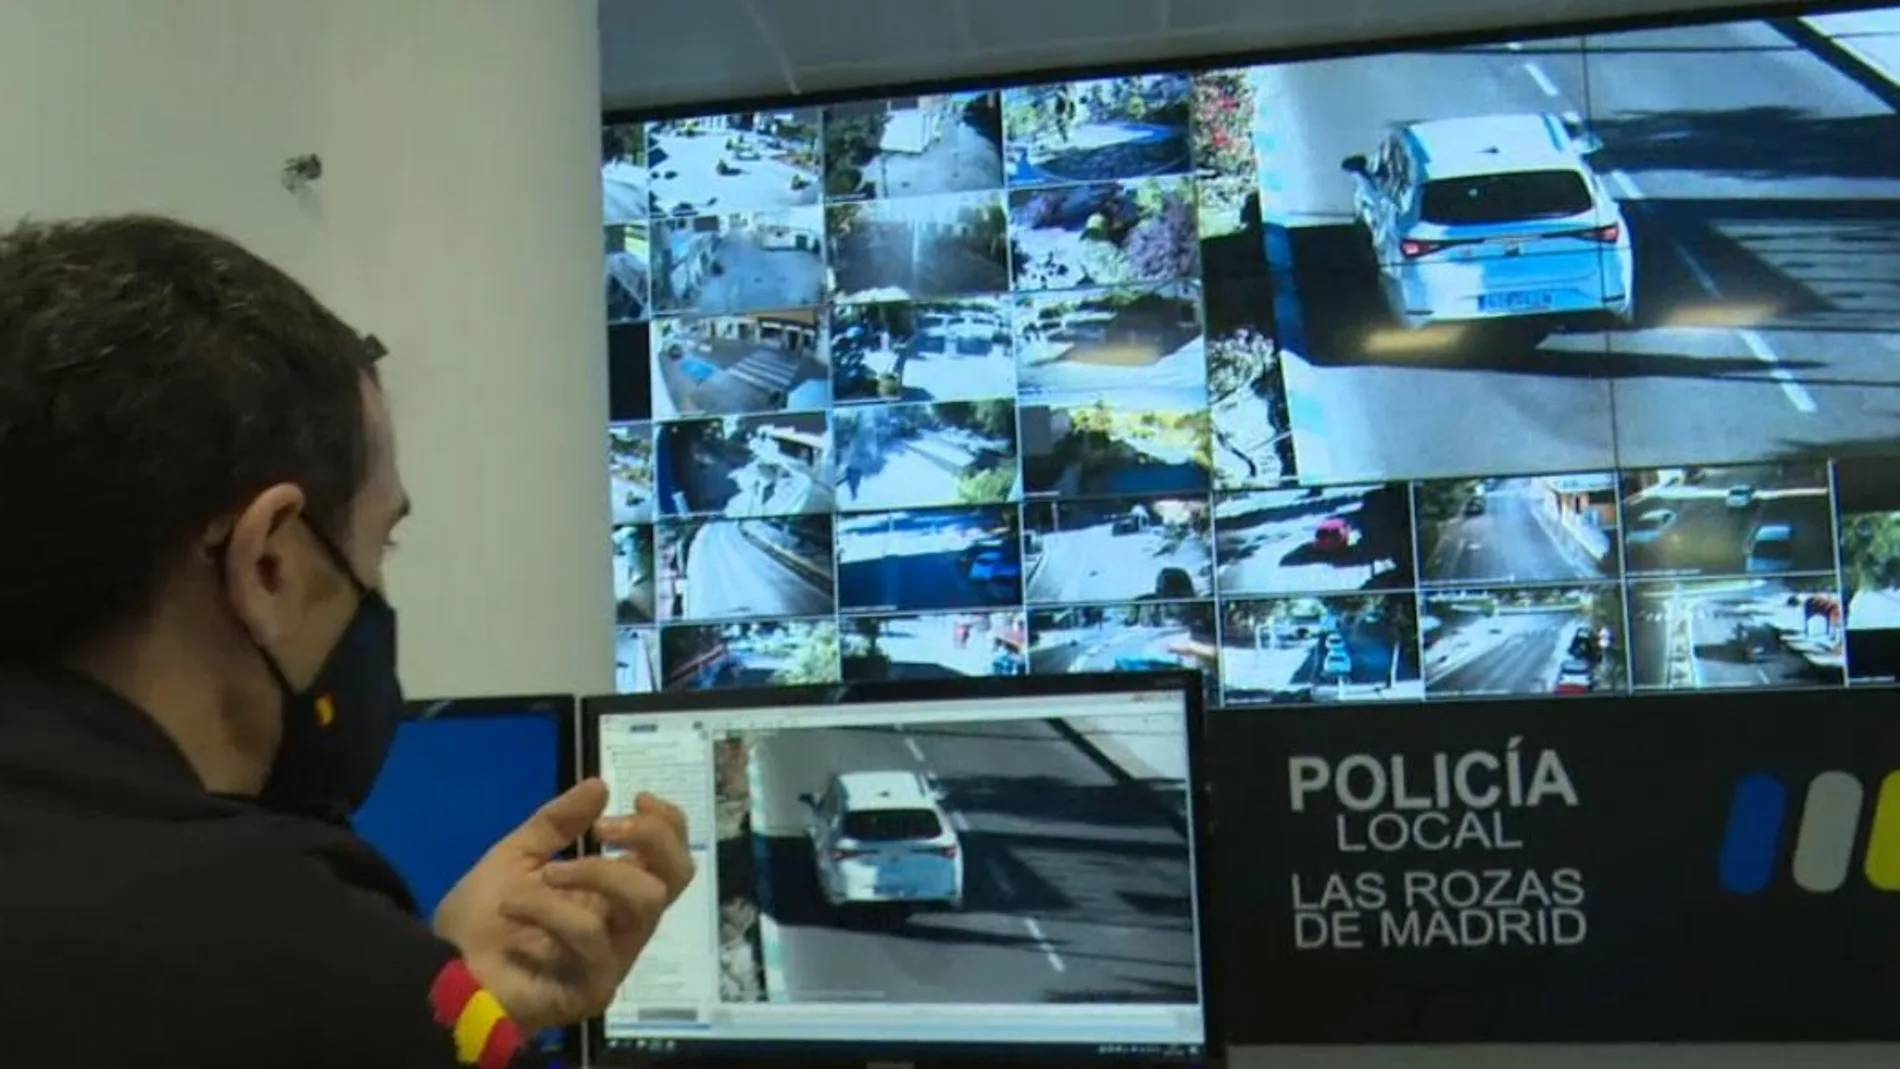 El municipio madrileño de Las Rozas instala un sofisticado sistema de videovigilancia para prevenir delitos